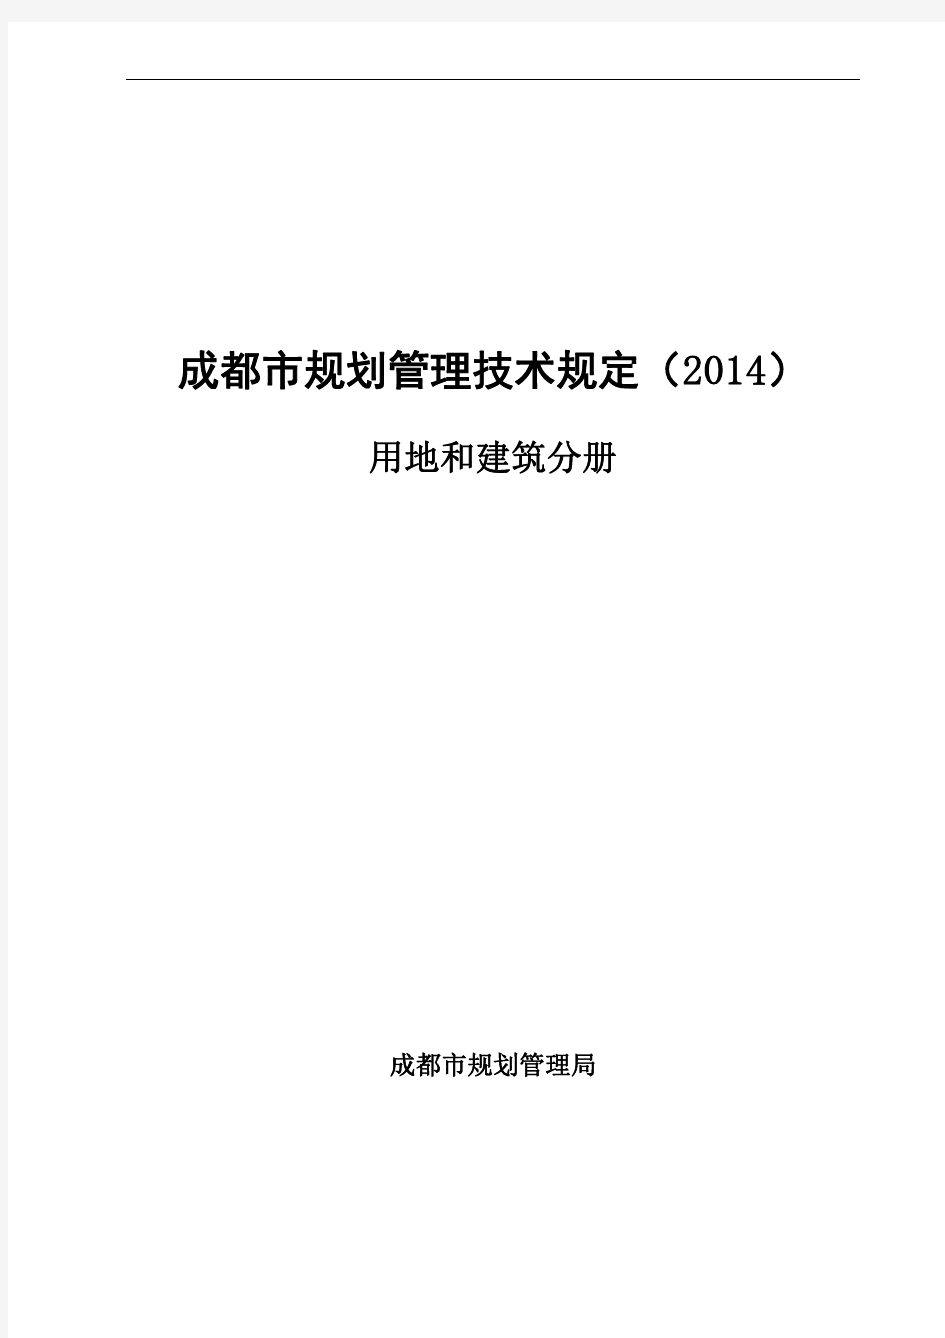 成都市规划管理技术规定(2014)和建筑分册